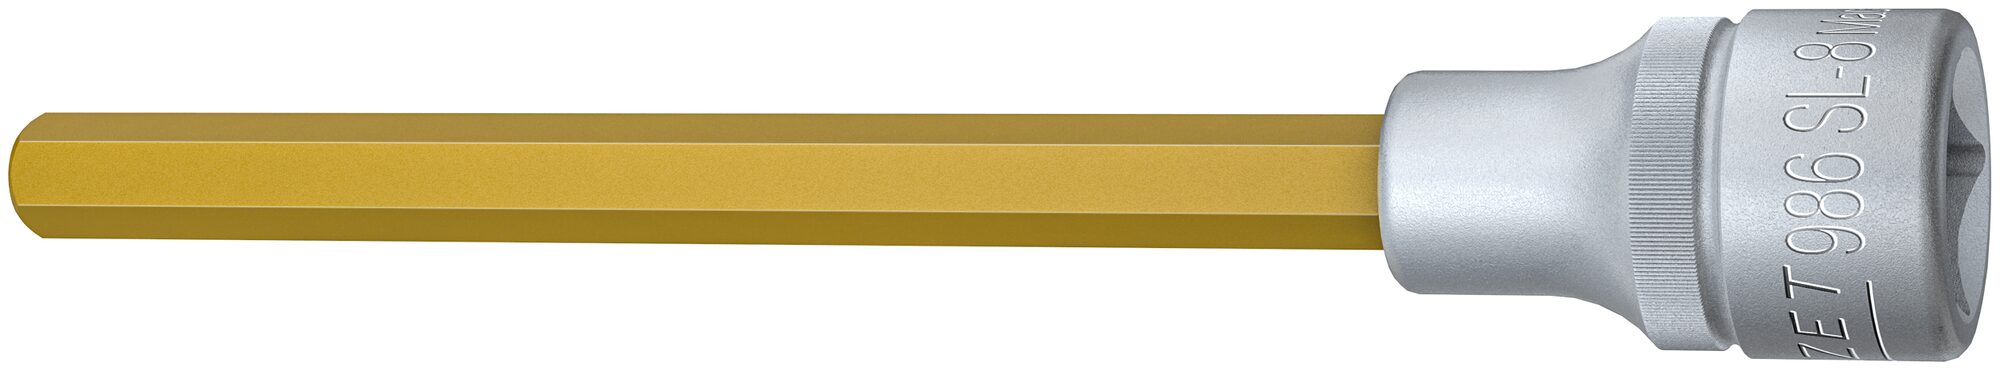 HAZET Schraubendreher-Steckschlüsseleinsatz 986SL-8 · Vierkant hohl 12,5 mm (1/2 Zoll) · Innen Sechskant Profil · 8 mm